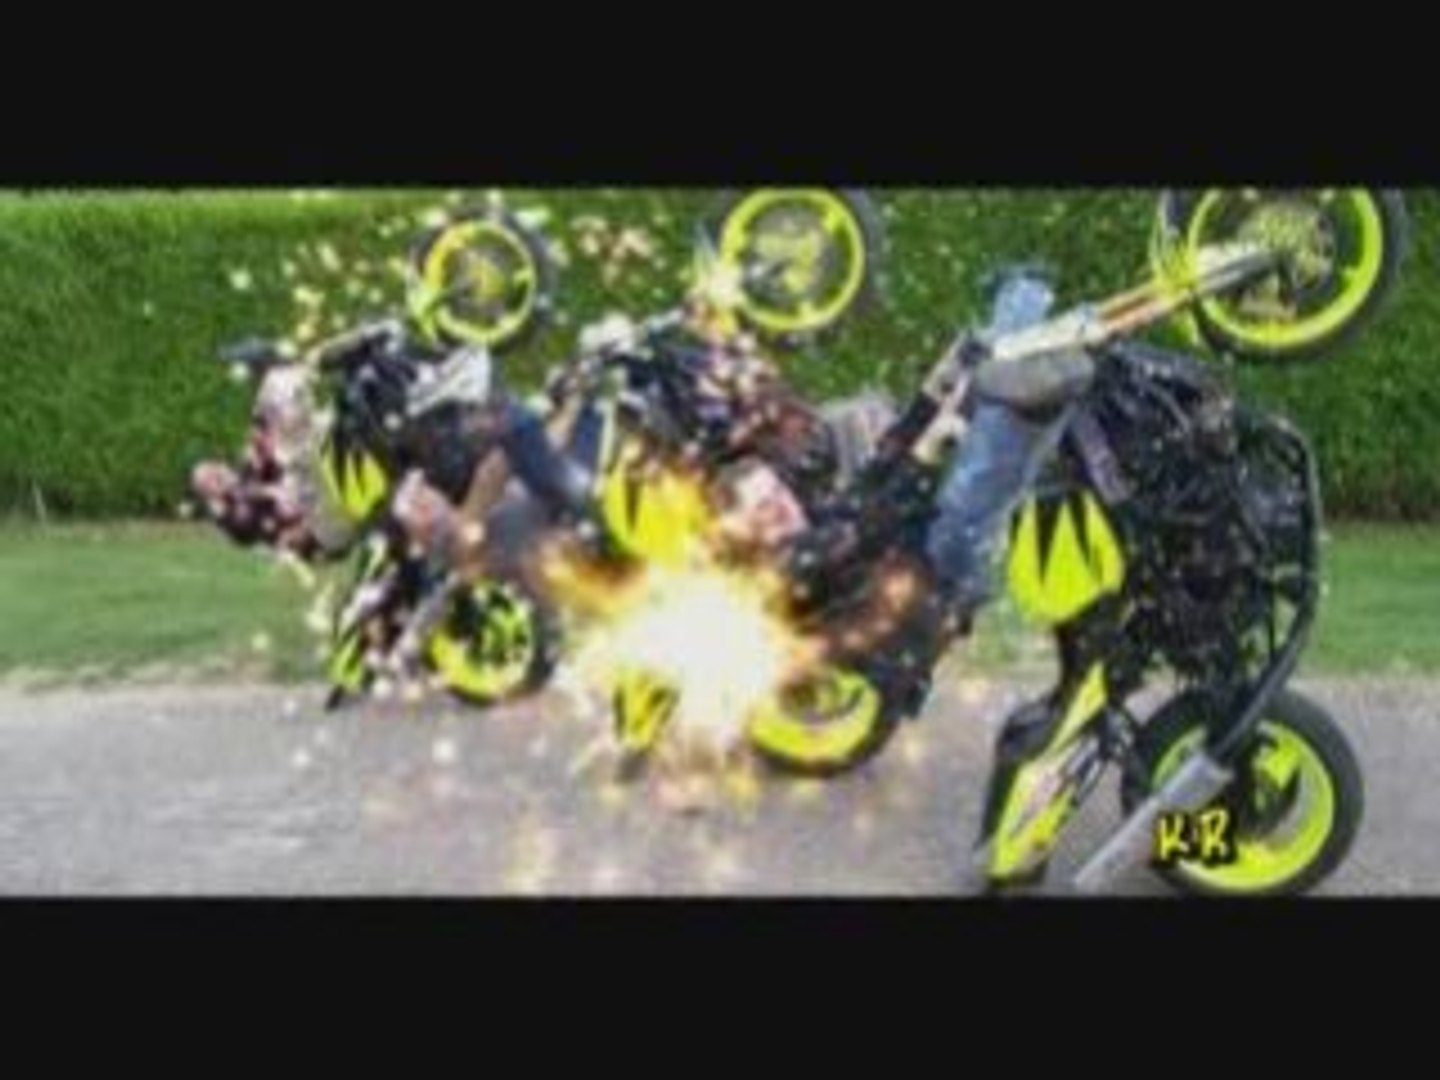 la titan team acrobatie - Vidéo Dailymotion